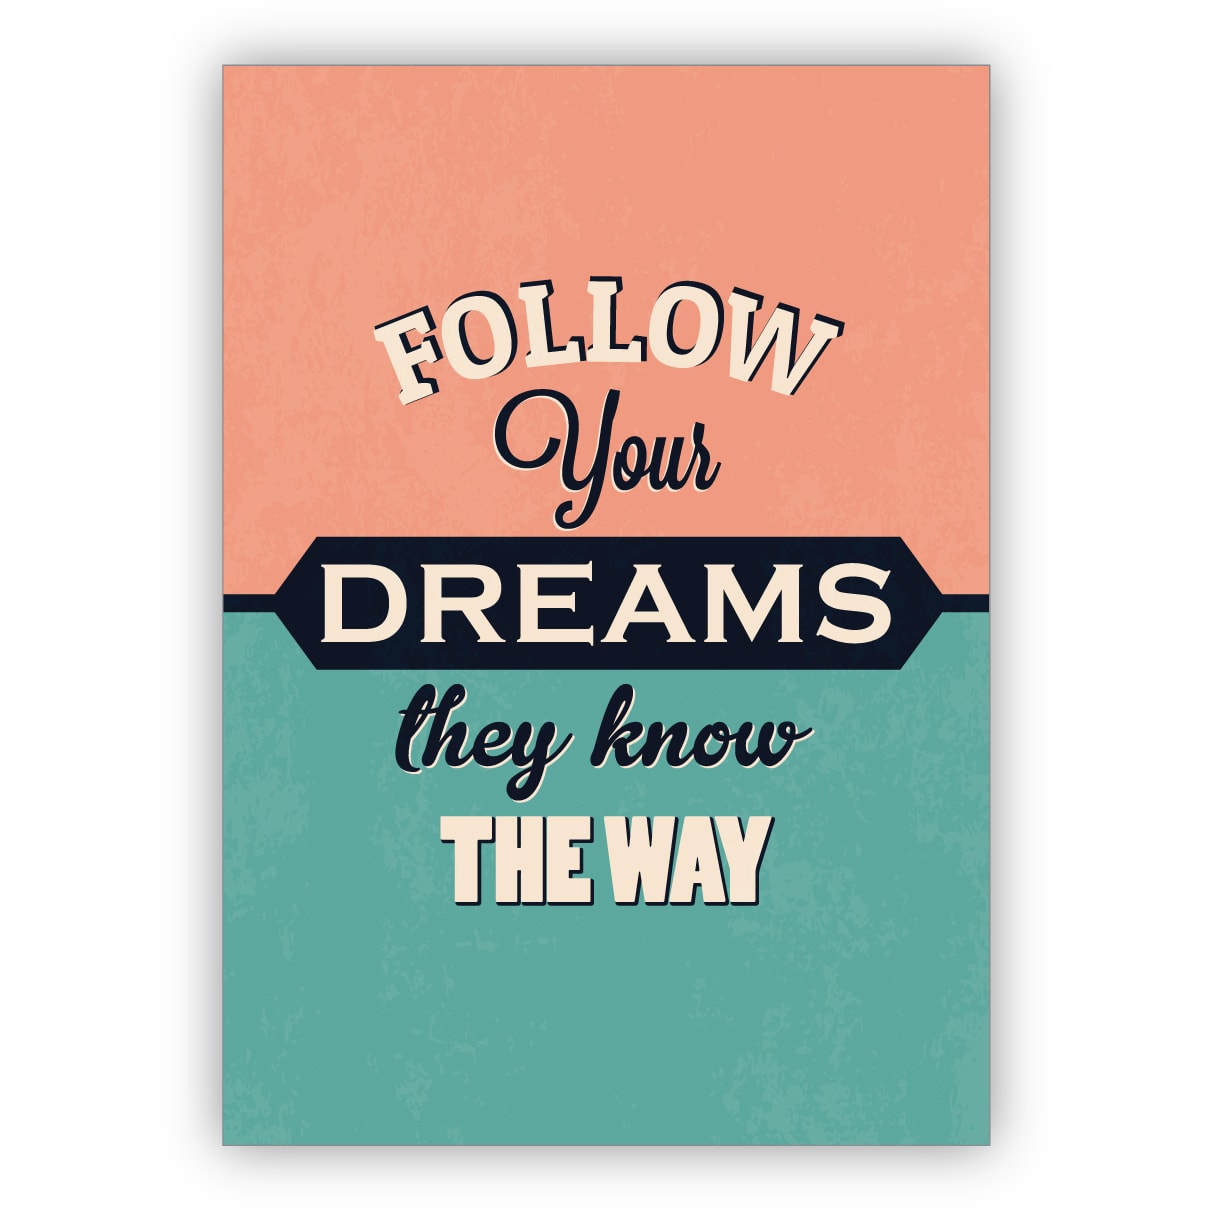 Schöne motivierende Retro Motto Grußkarte: Follow your dreams they know the way